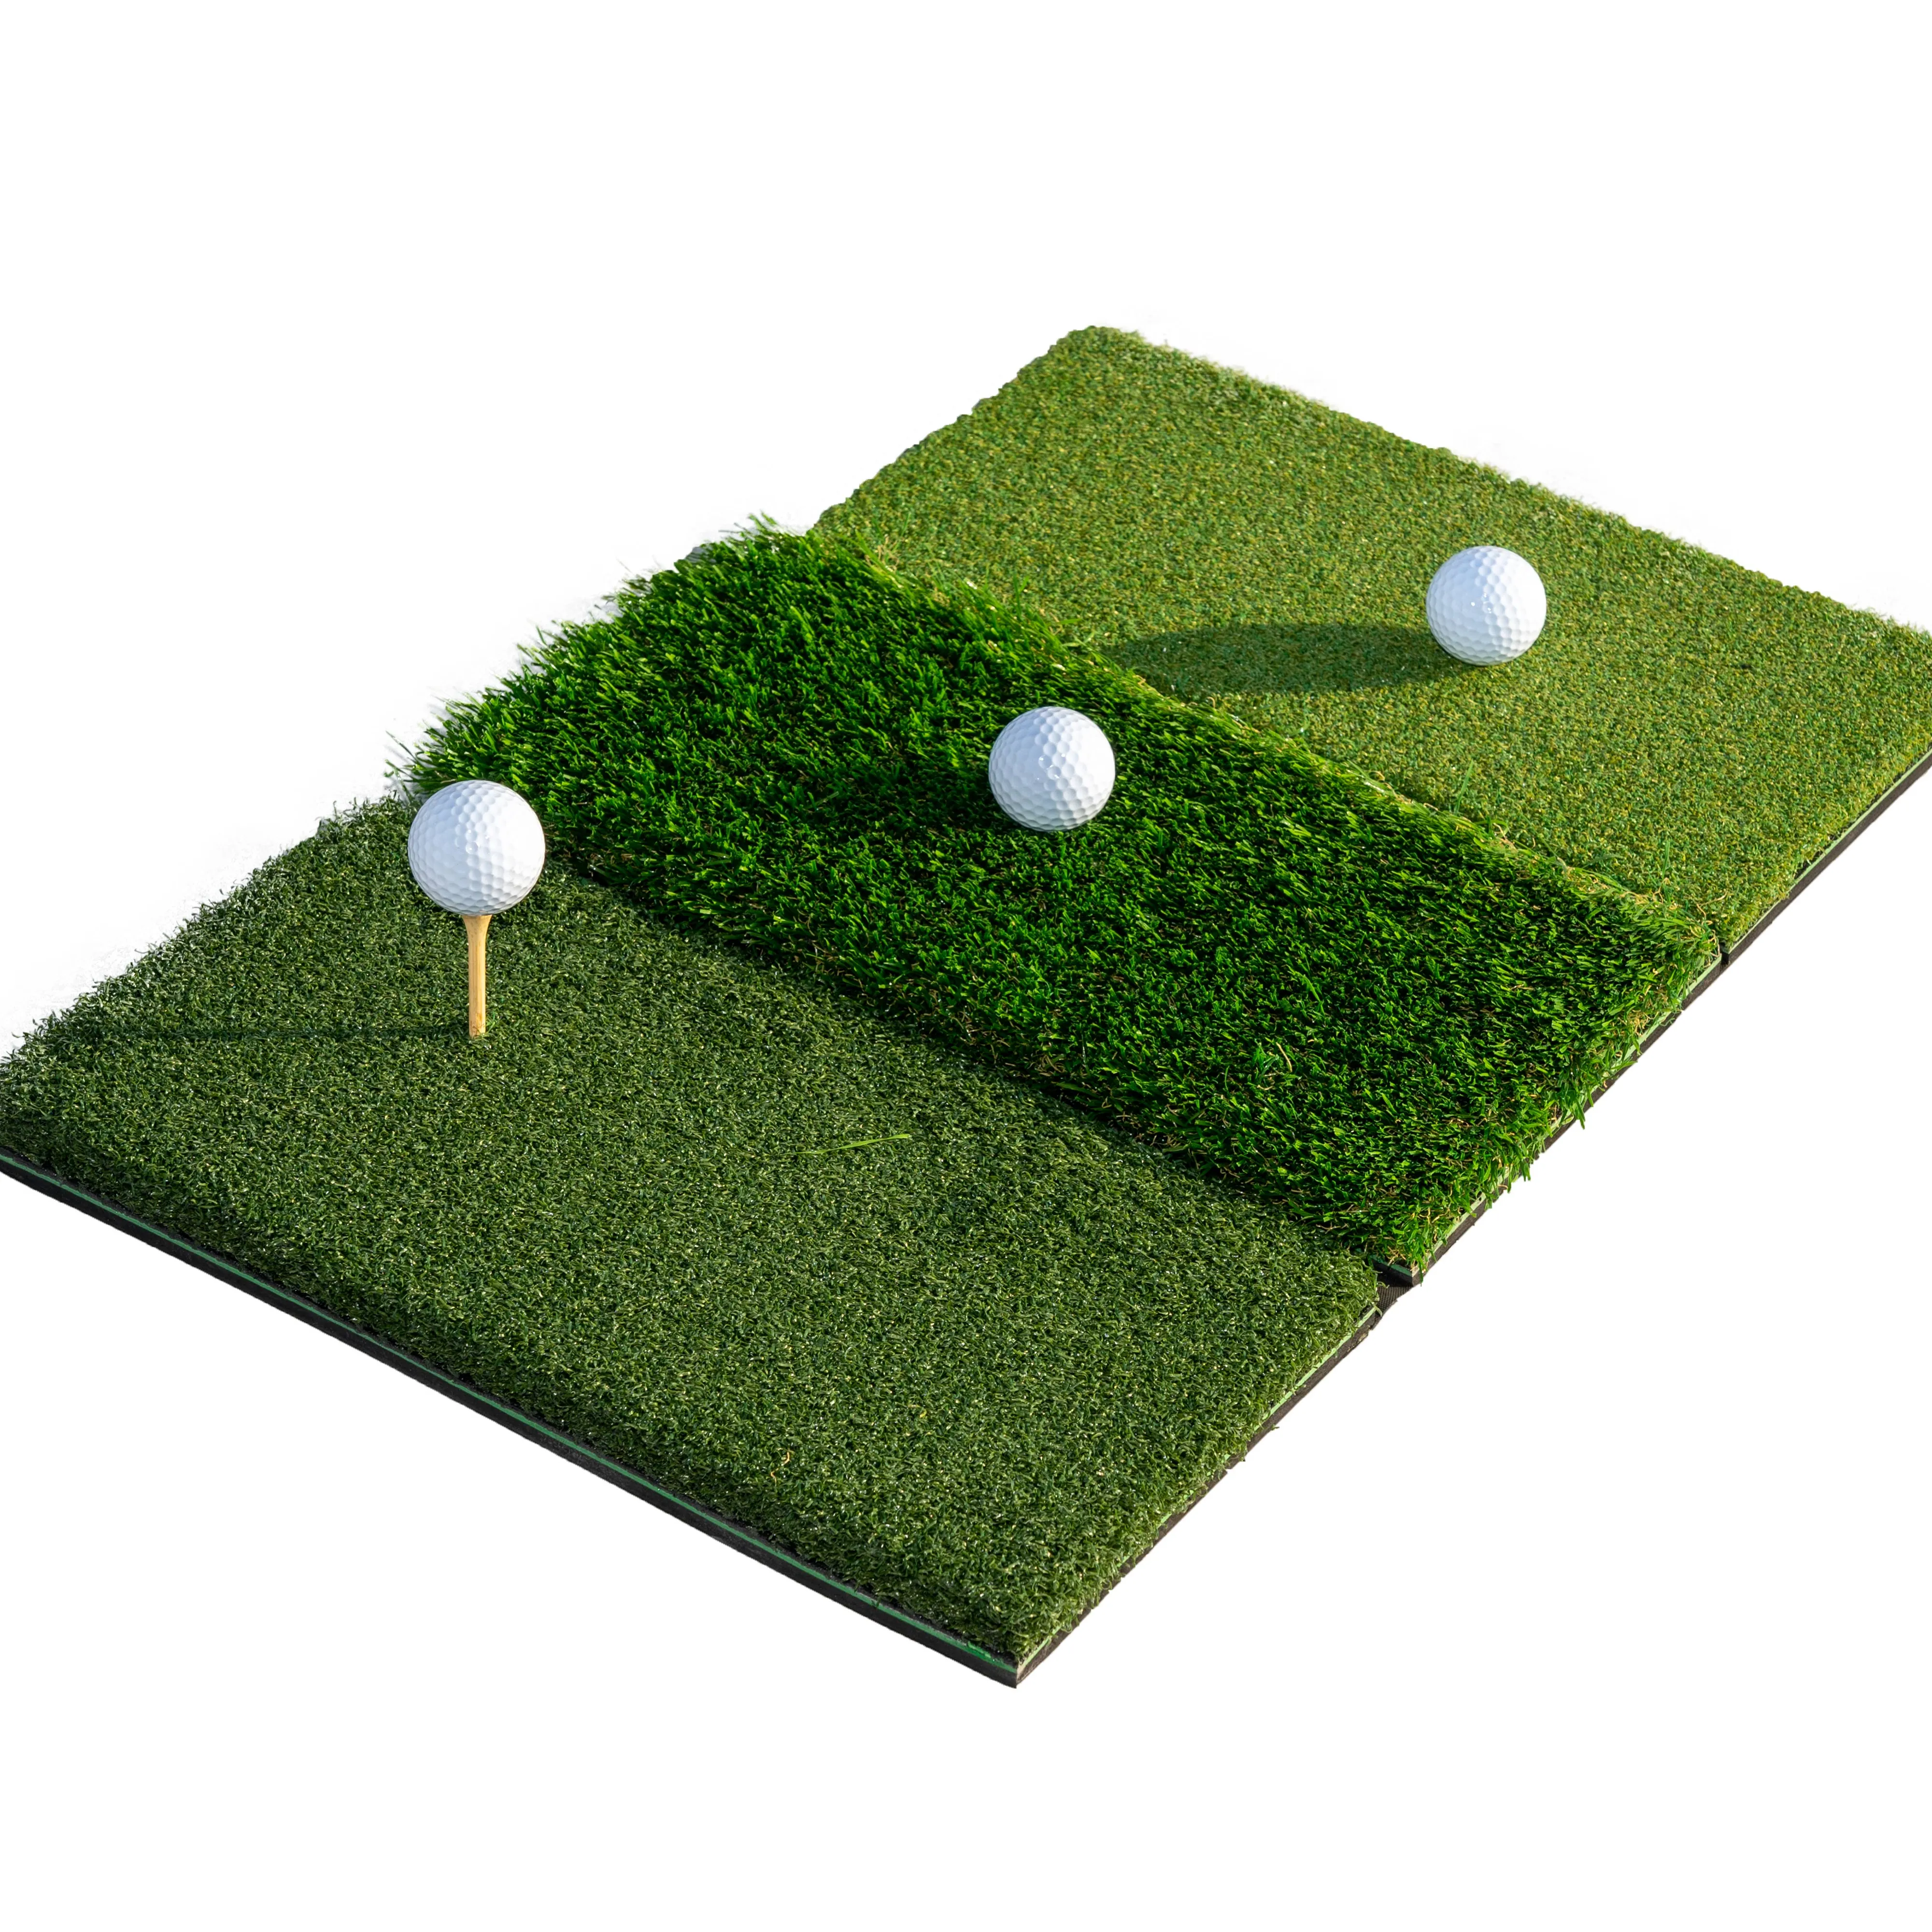 3-in-1 faltbare Gras matte Tragbare Golf-Schlag matte für Trainings hilfen